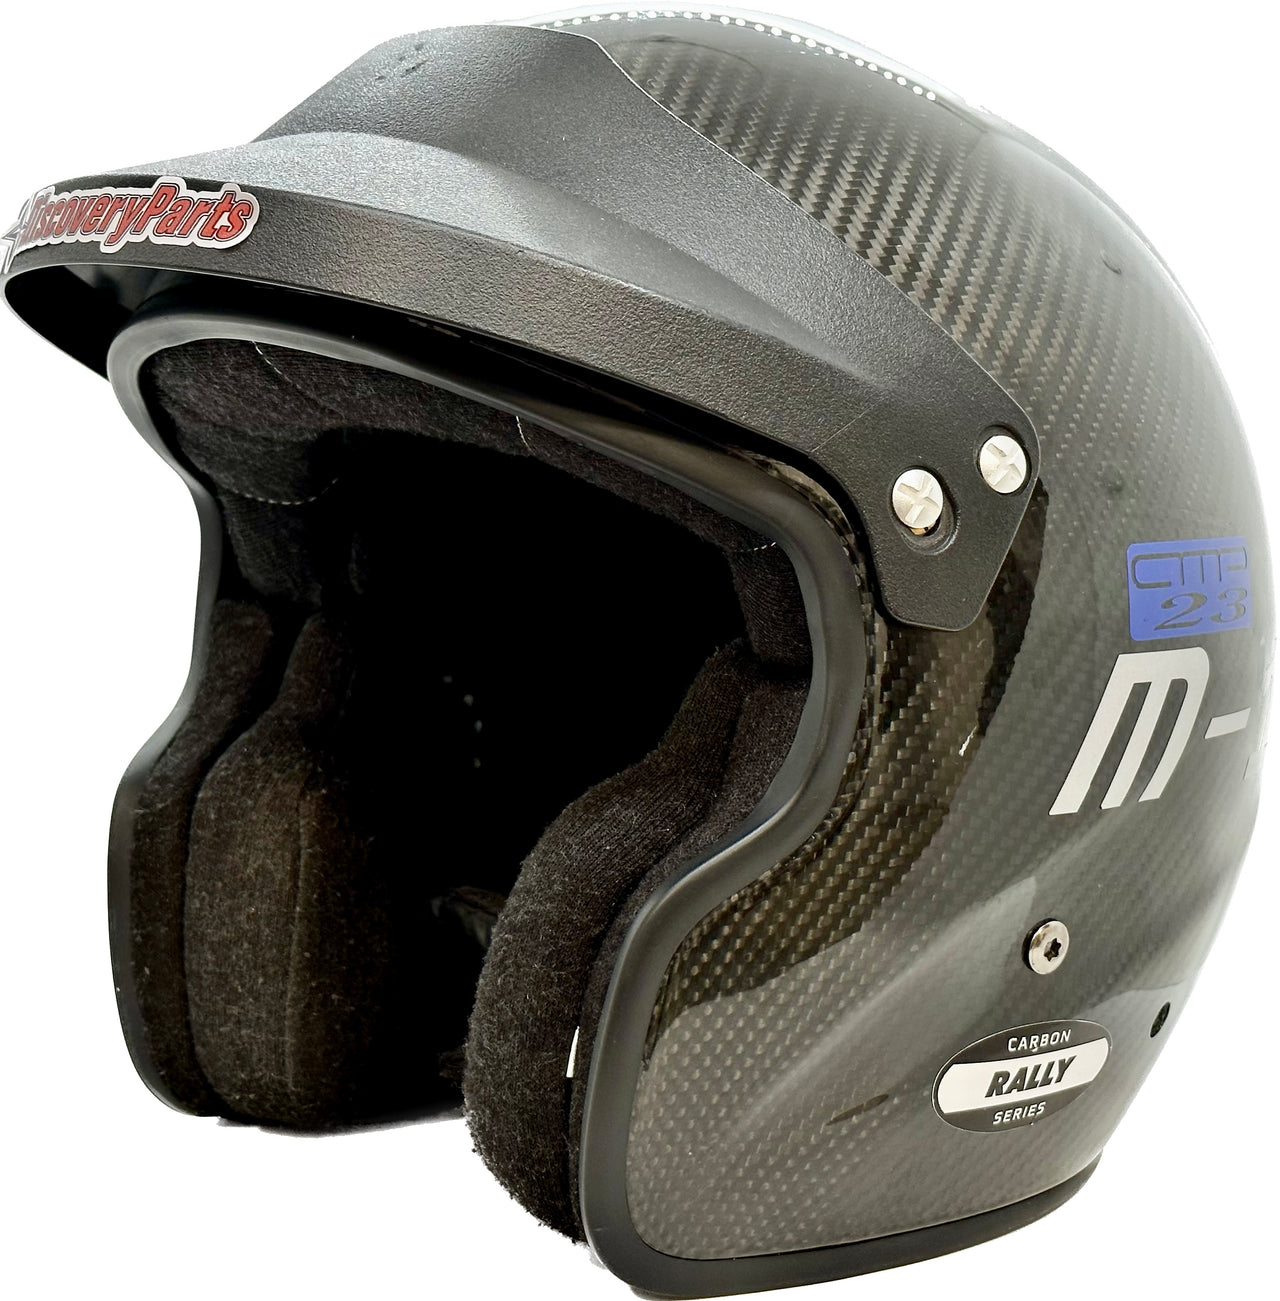 Daily Rental of SA2015/SA2020 Helmet at AMP